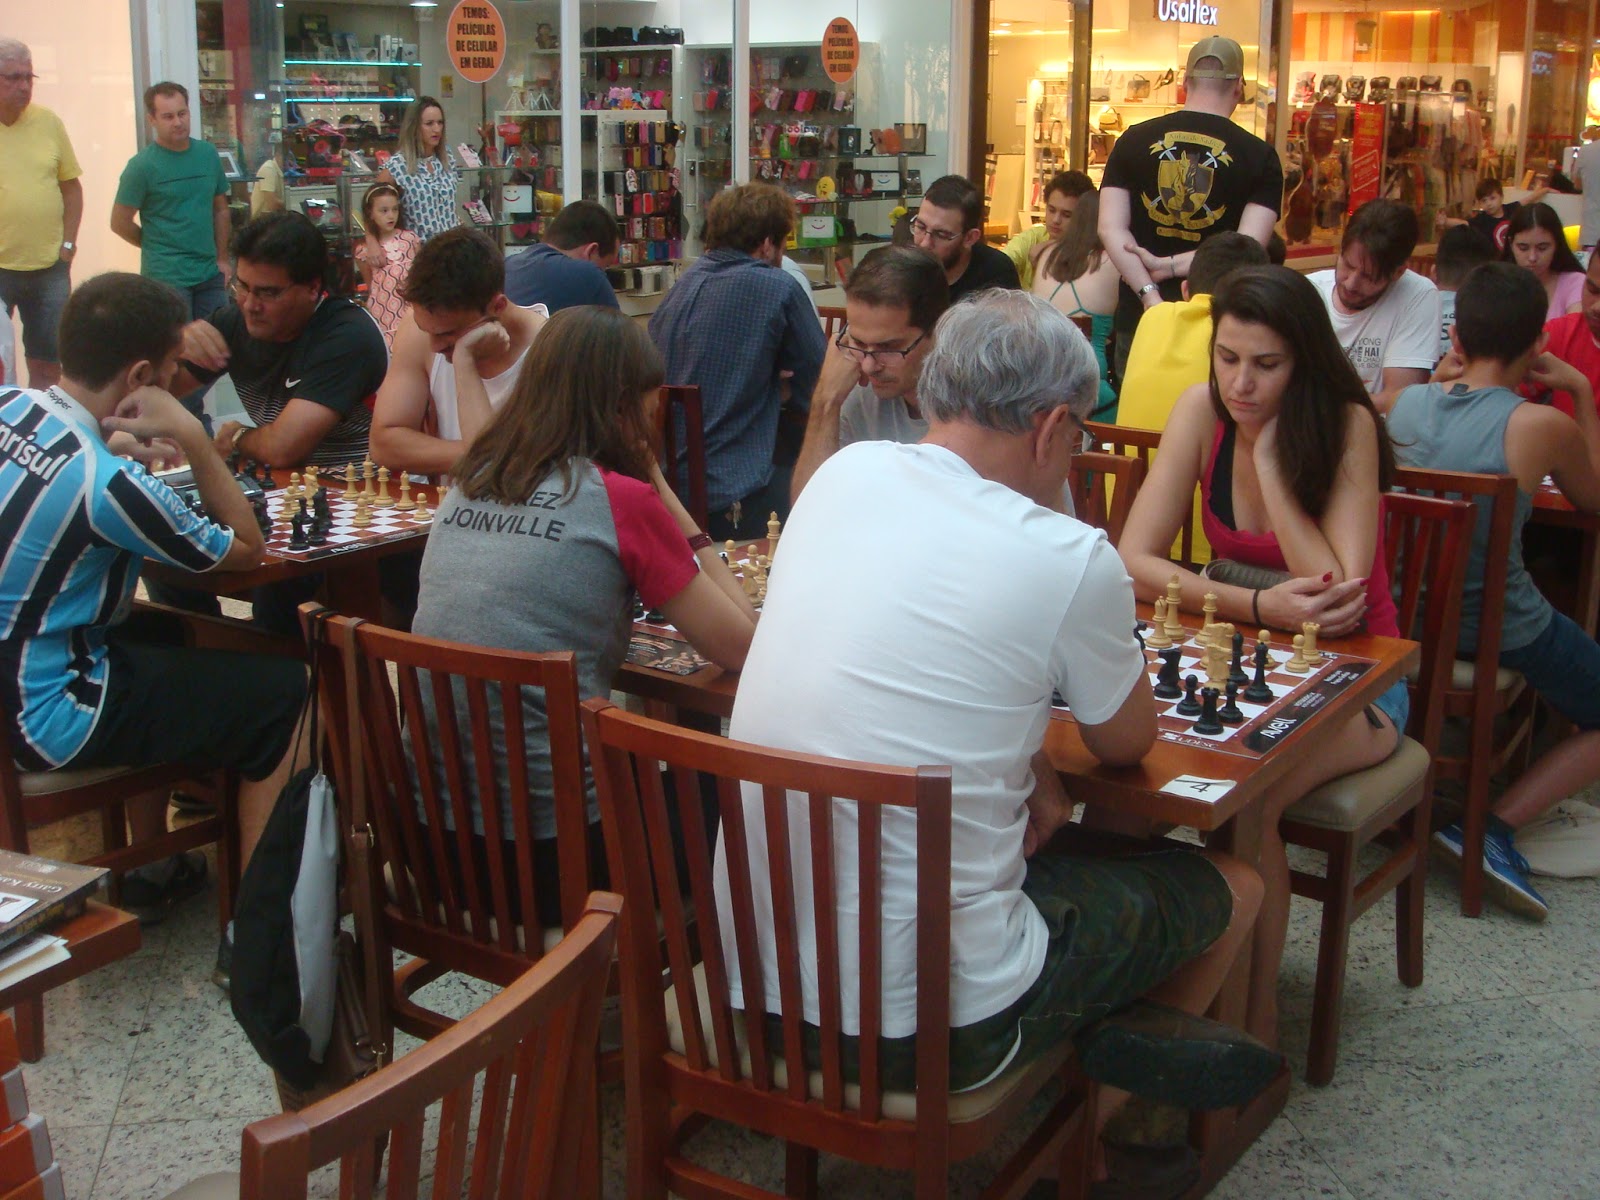 Notícia - Núcleo de xadrez da Udesc Joinville realiza primeiro torneio  online nesta sexta